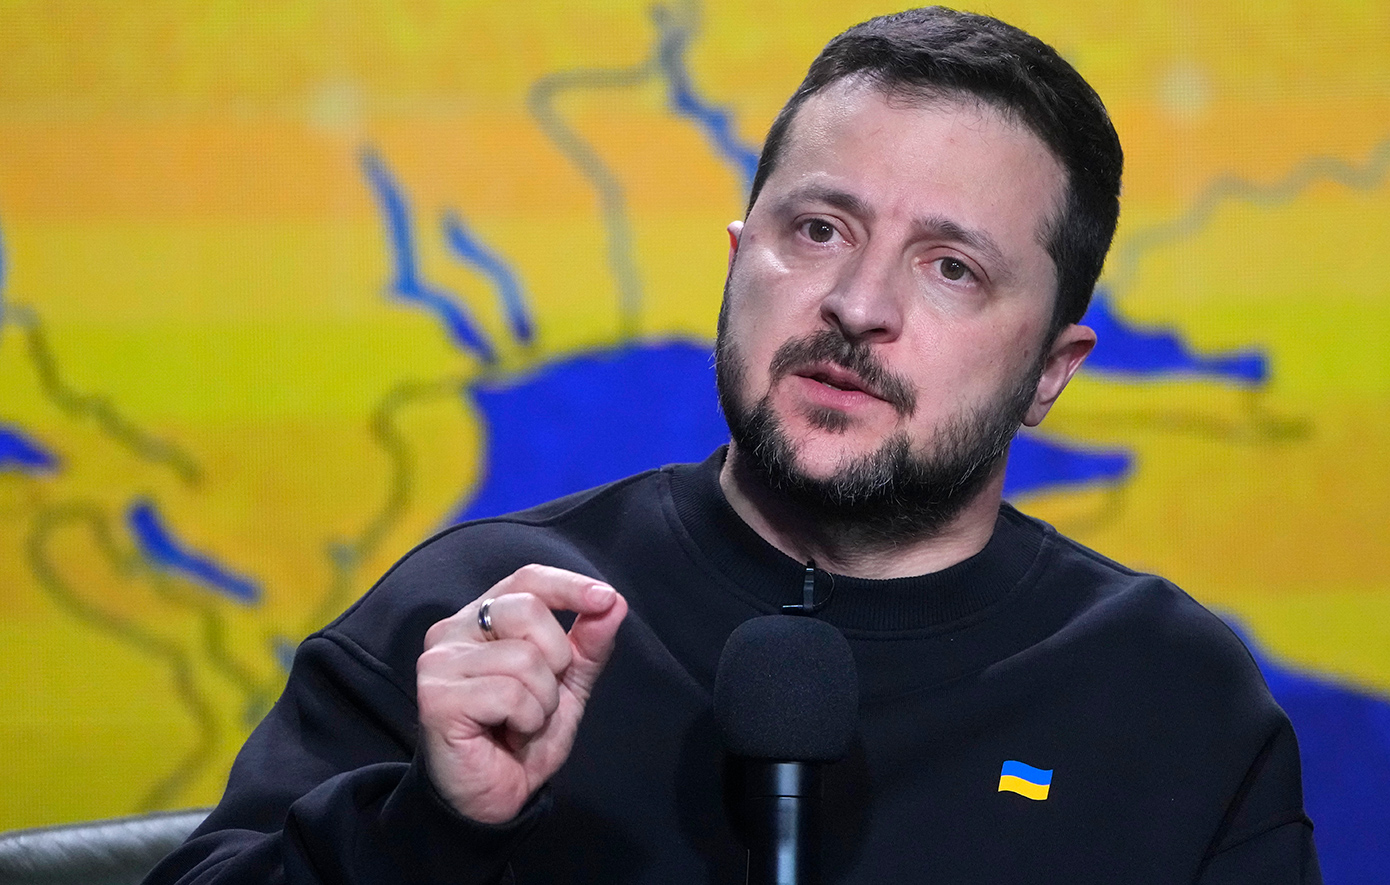 Ζελένσκι: «Η Ουκρανία έχει ανάγκη βοήθειας από τους συμμάχους της ακριβώς όπως το Ισραήλ»